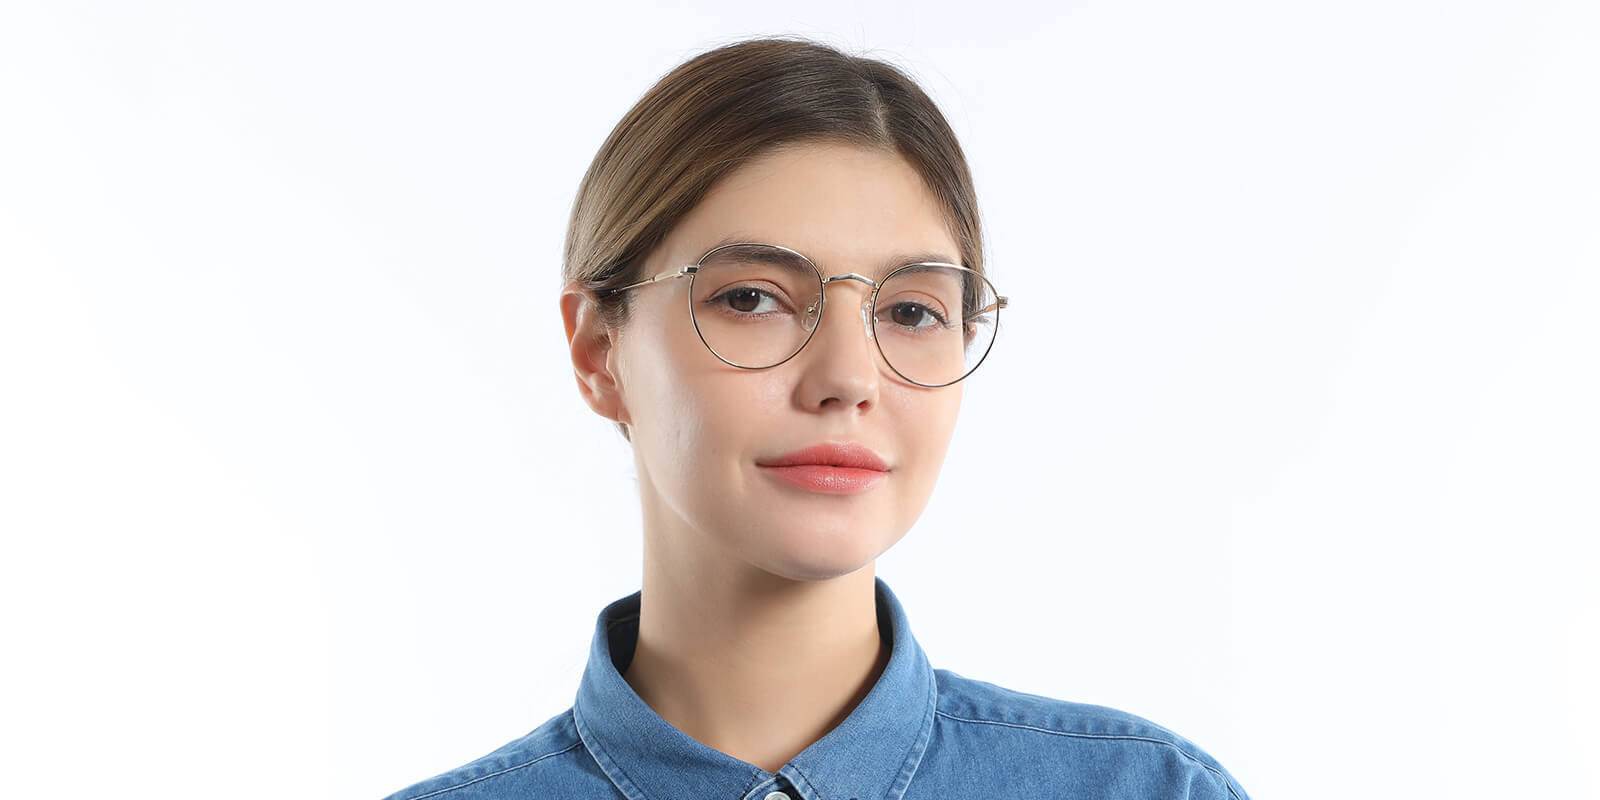 Silver - Oval Glasses - Leslie